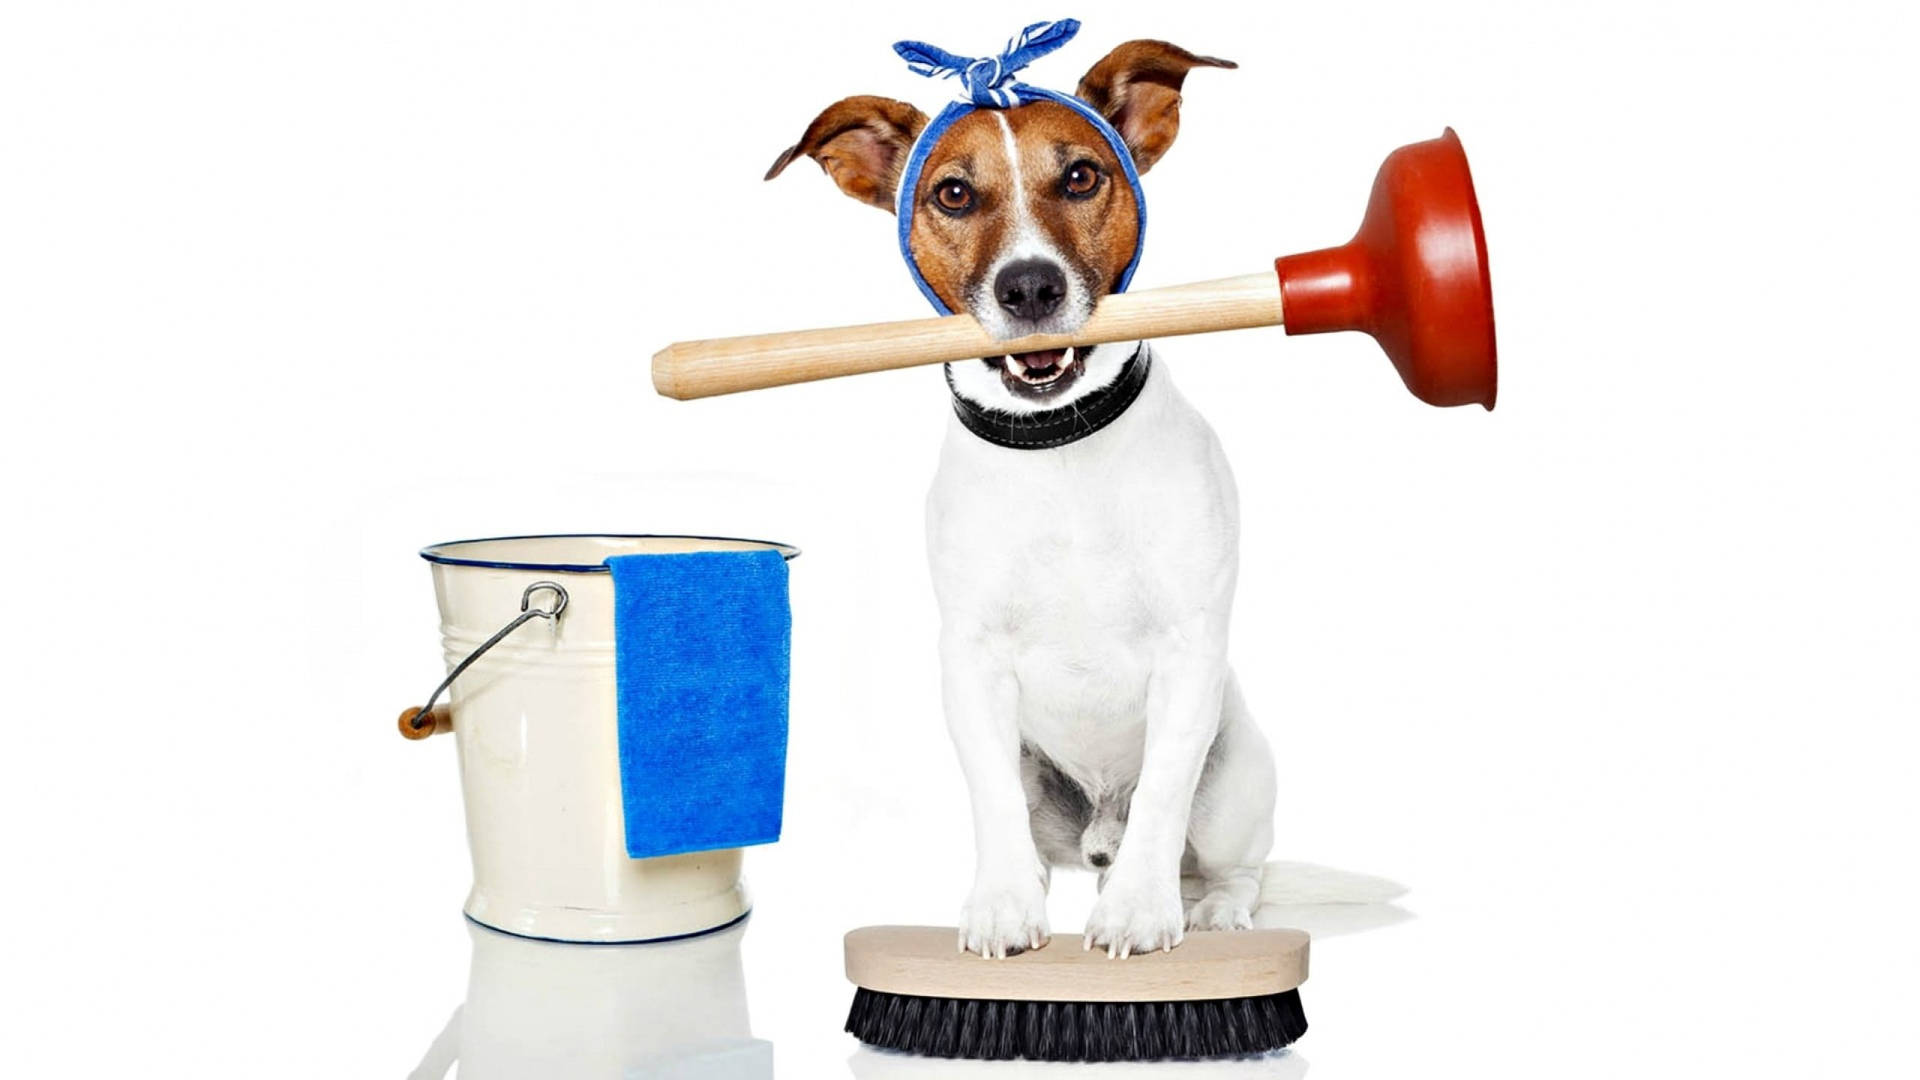 Cãoadorável Fazendo A Limpeza Da Casa. Papel de Parede